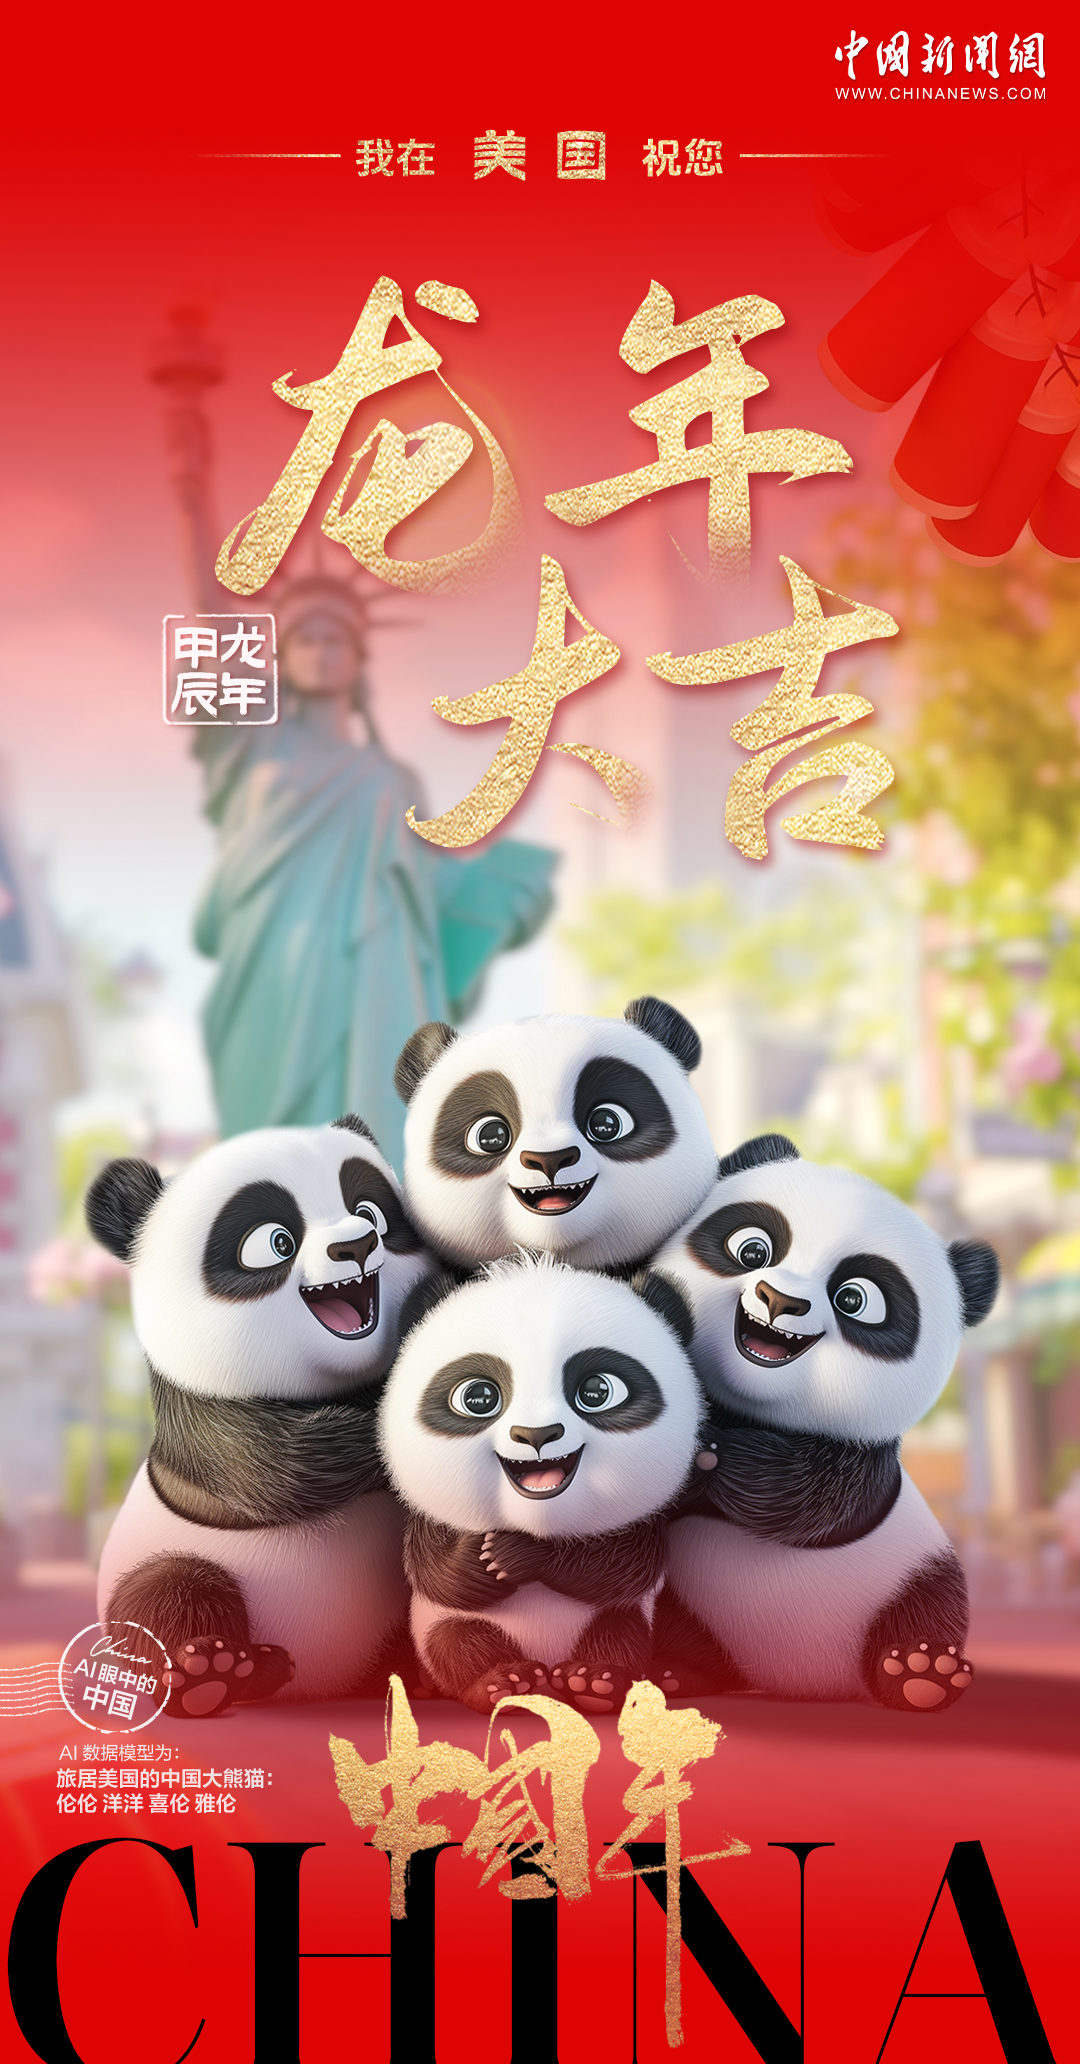 旅居海外的中国熊猫们送来了对龙年的美好祝福